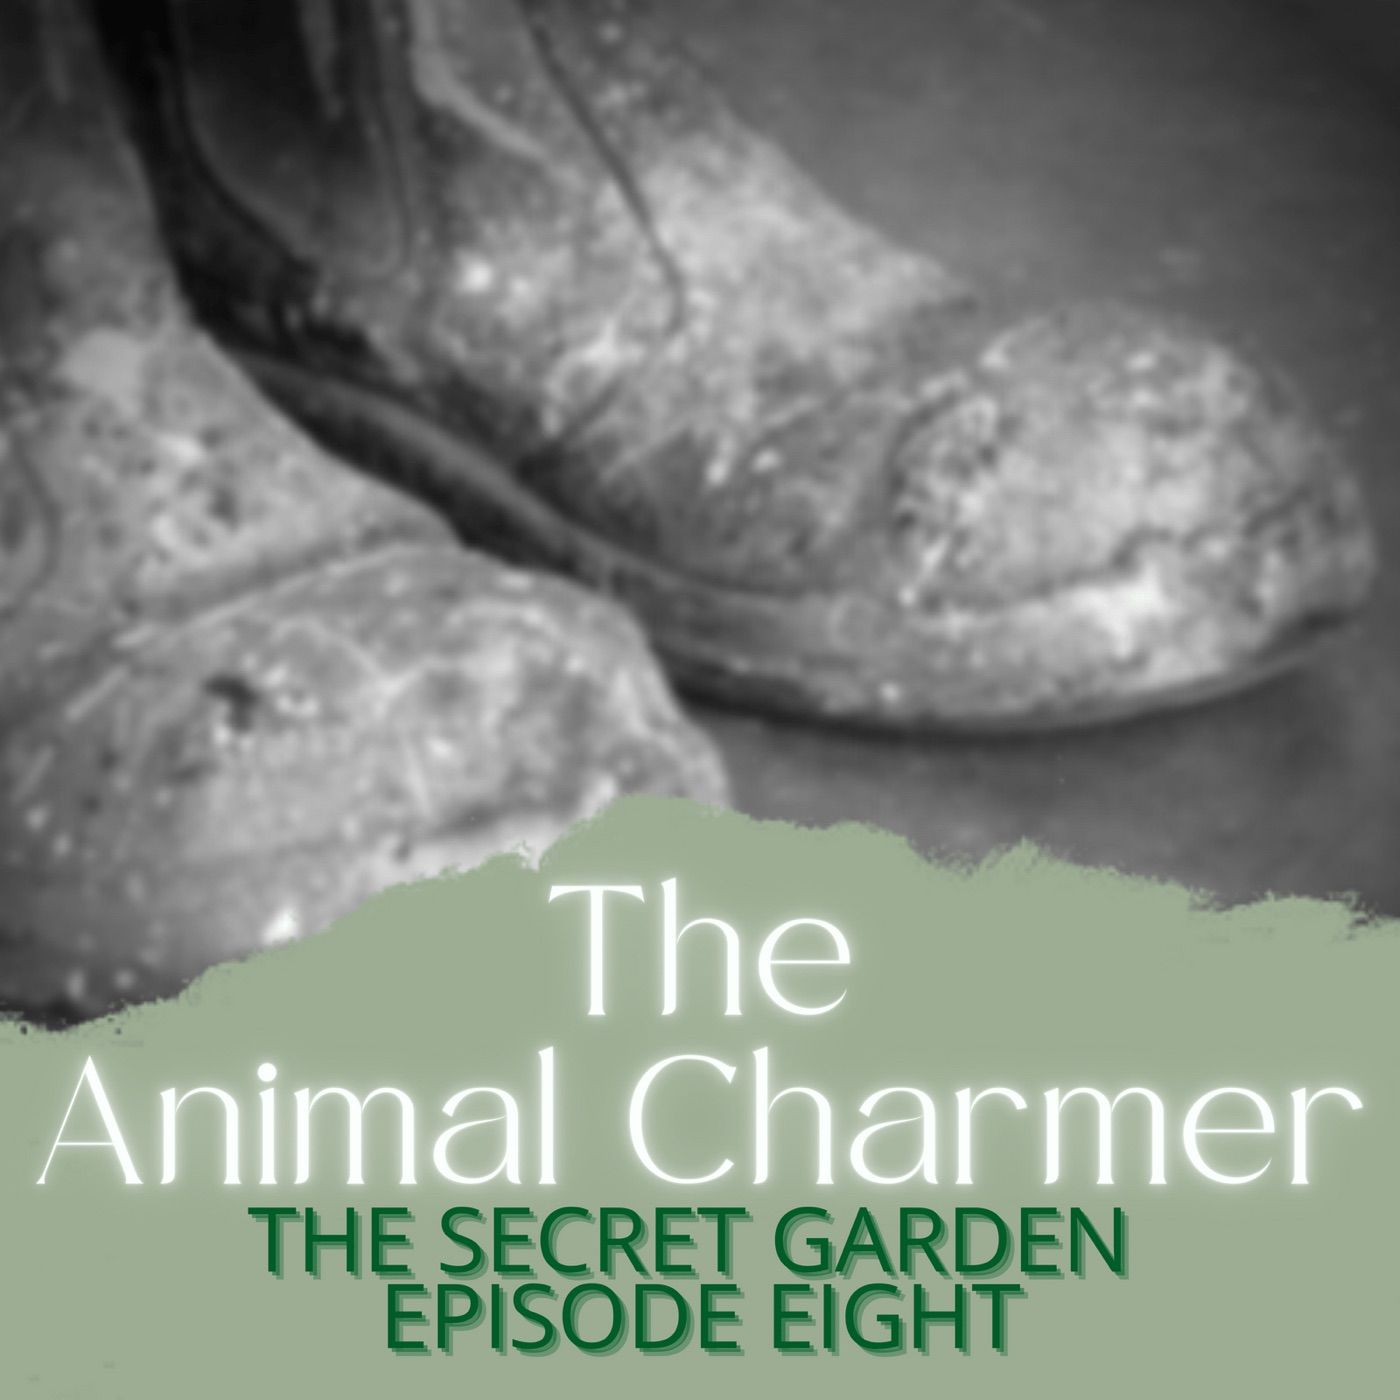 8. The Animal Charmer